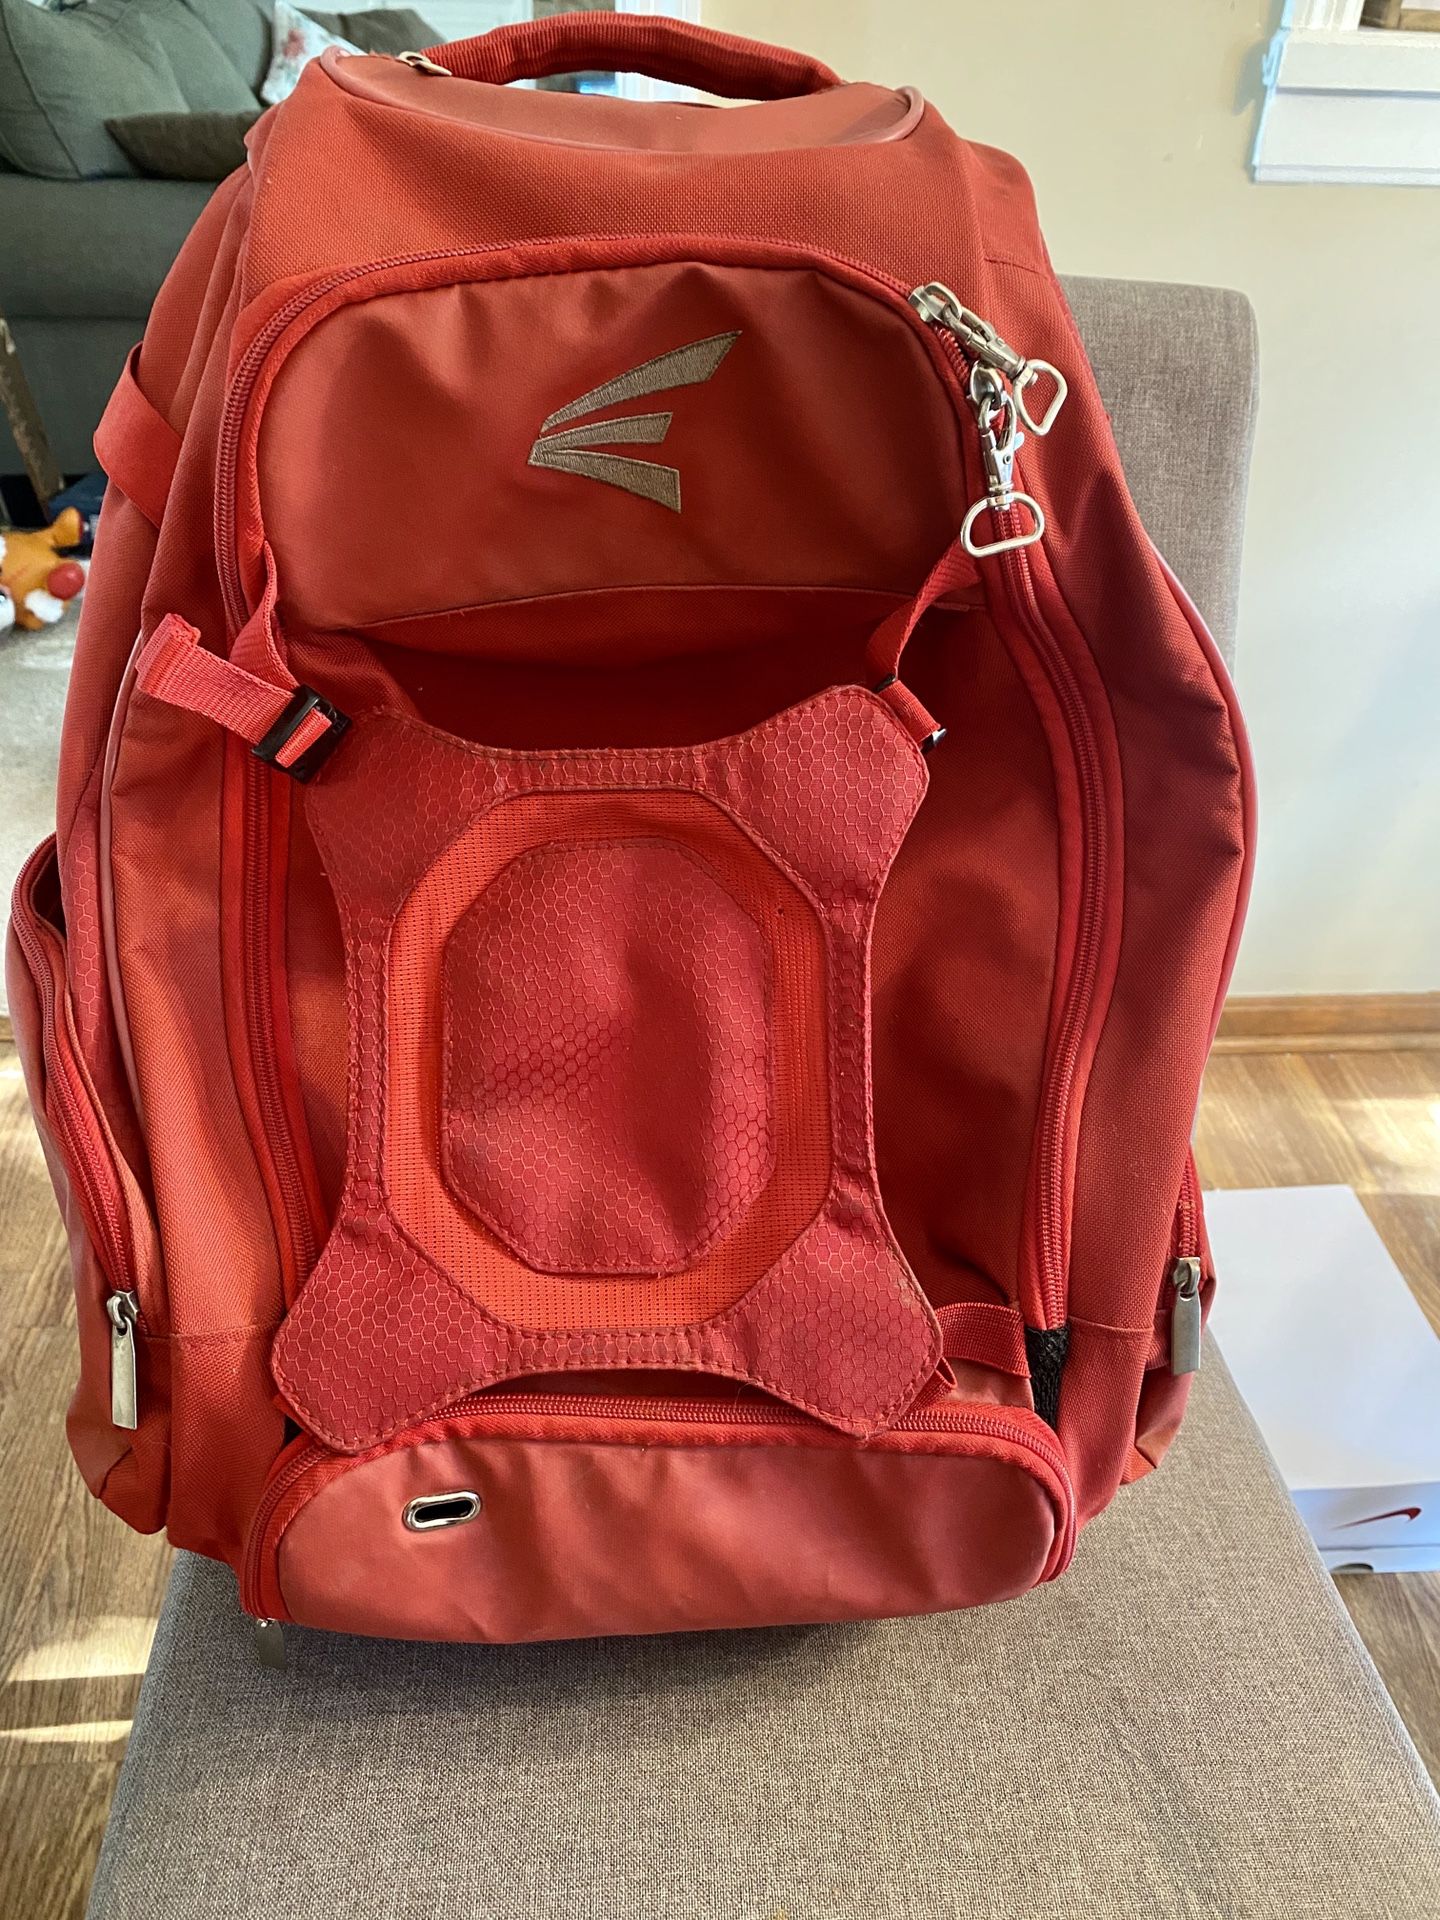 Easton Walk-Off baseball backpack